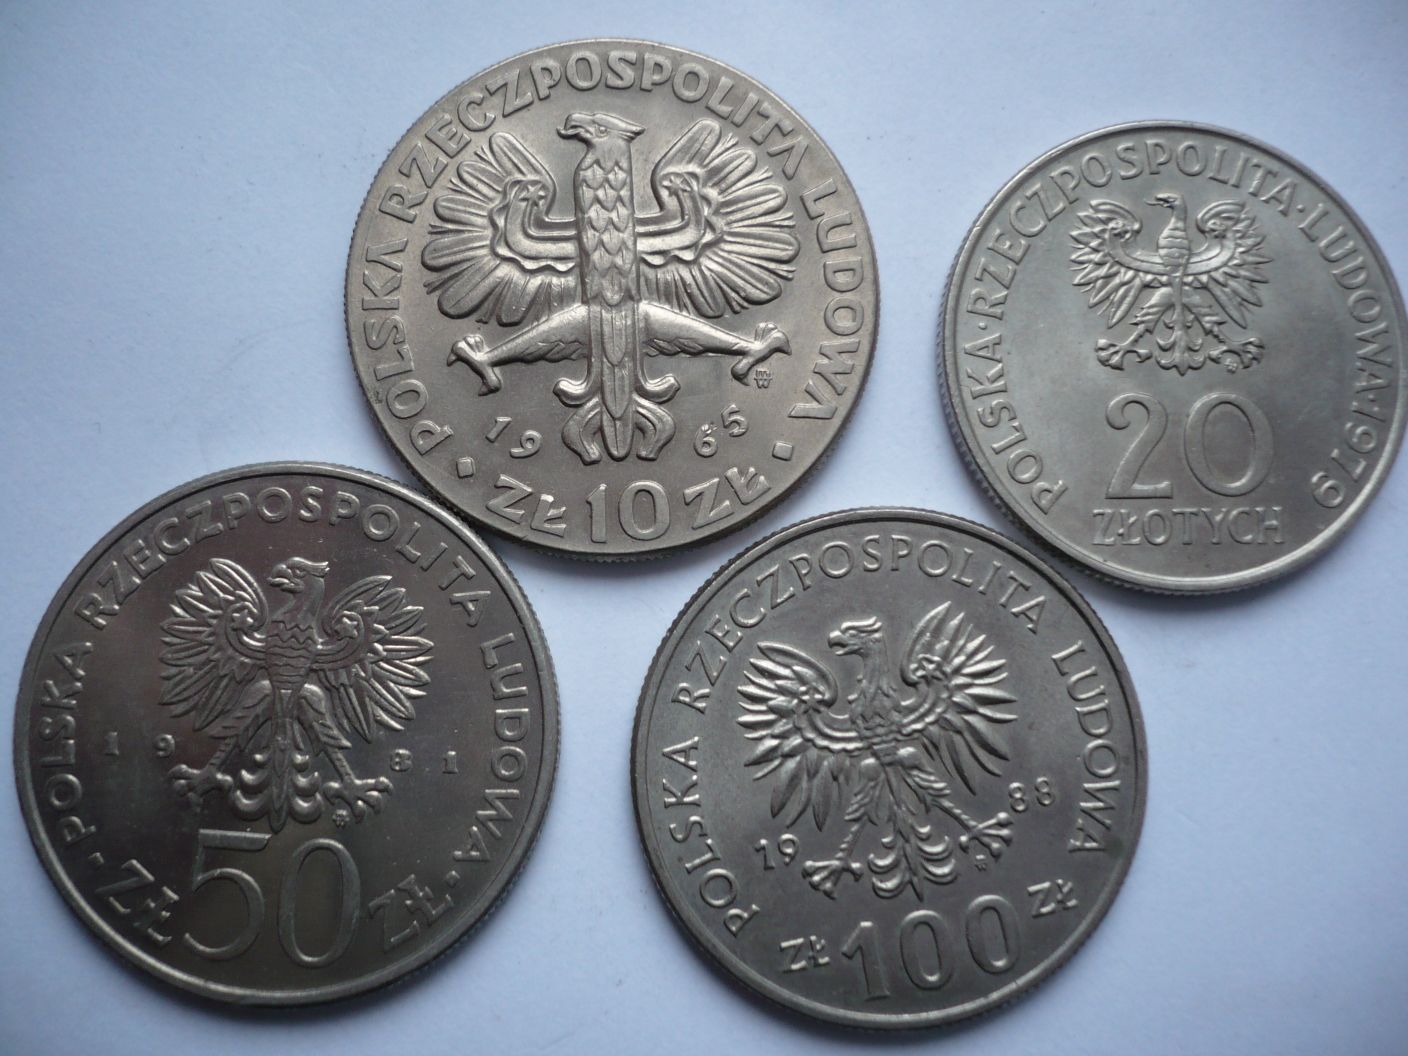 Monety PRL 10 zł 1965, 20 zł 1979, 50 zł 1981 i 100 zł 1988